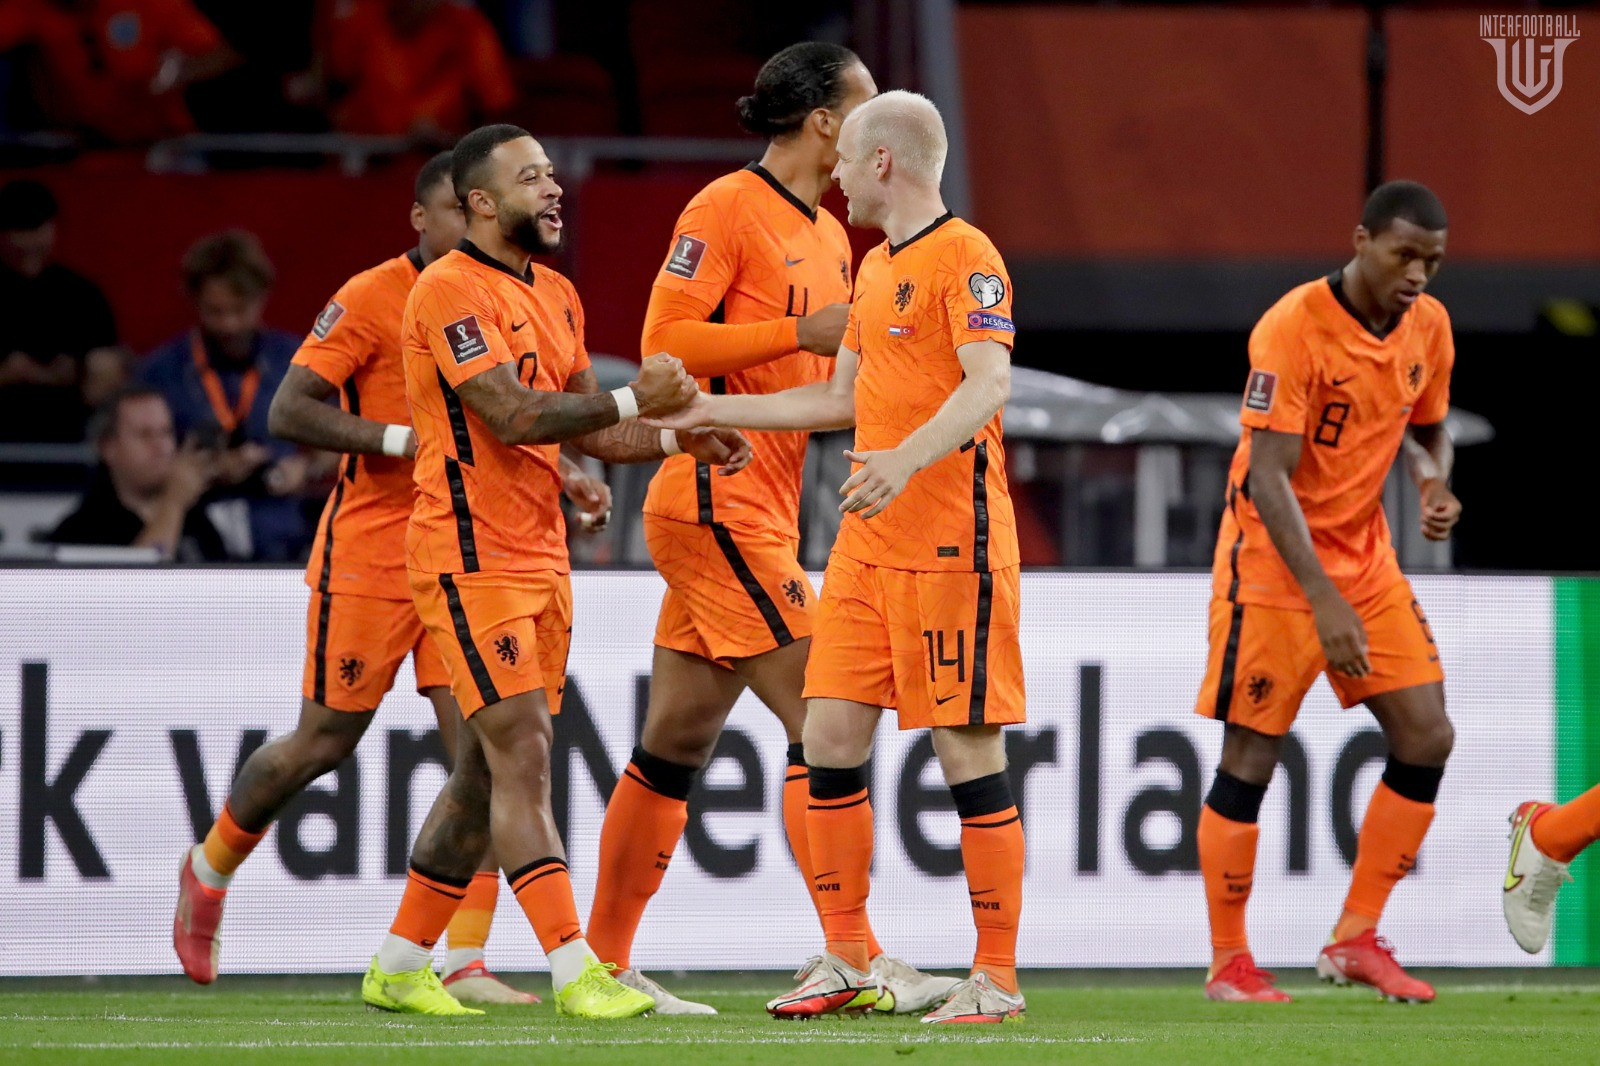 Հոլանդիայի հավաքականի ֆանտաստիկ գրոհն ու Դեպայի գոլը Թուրքիայի դարպասը🎥